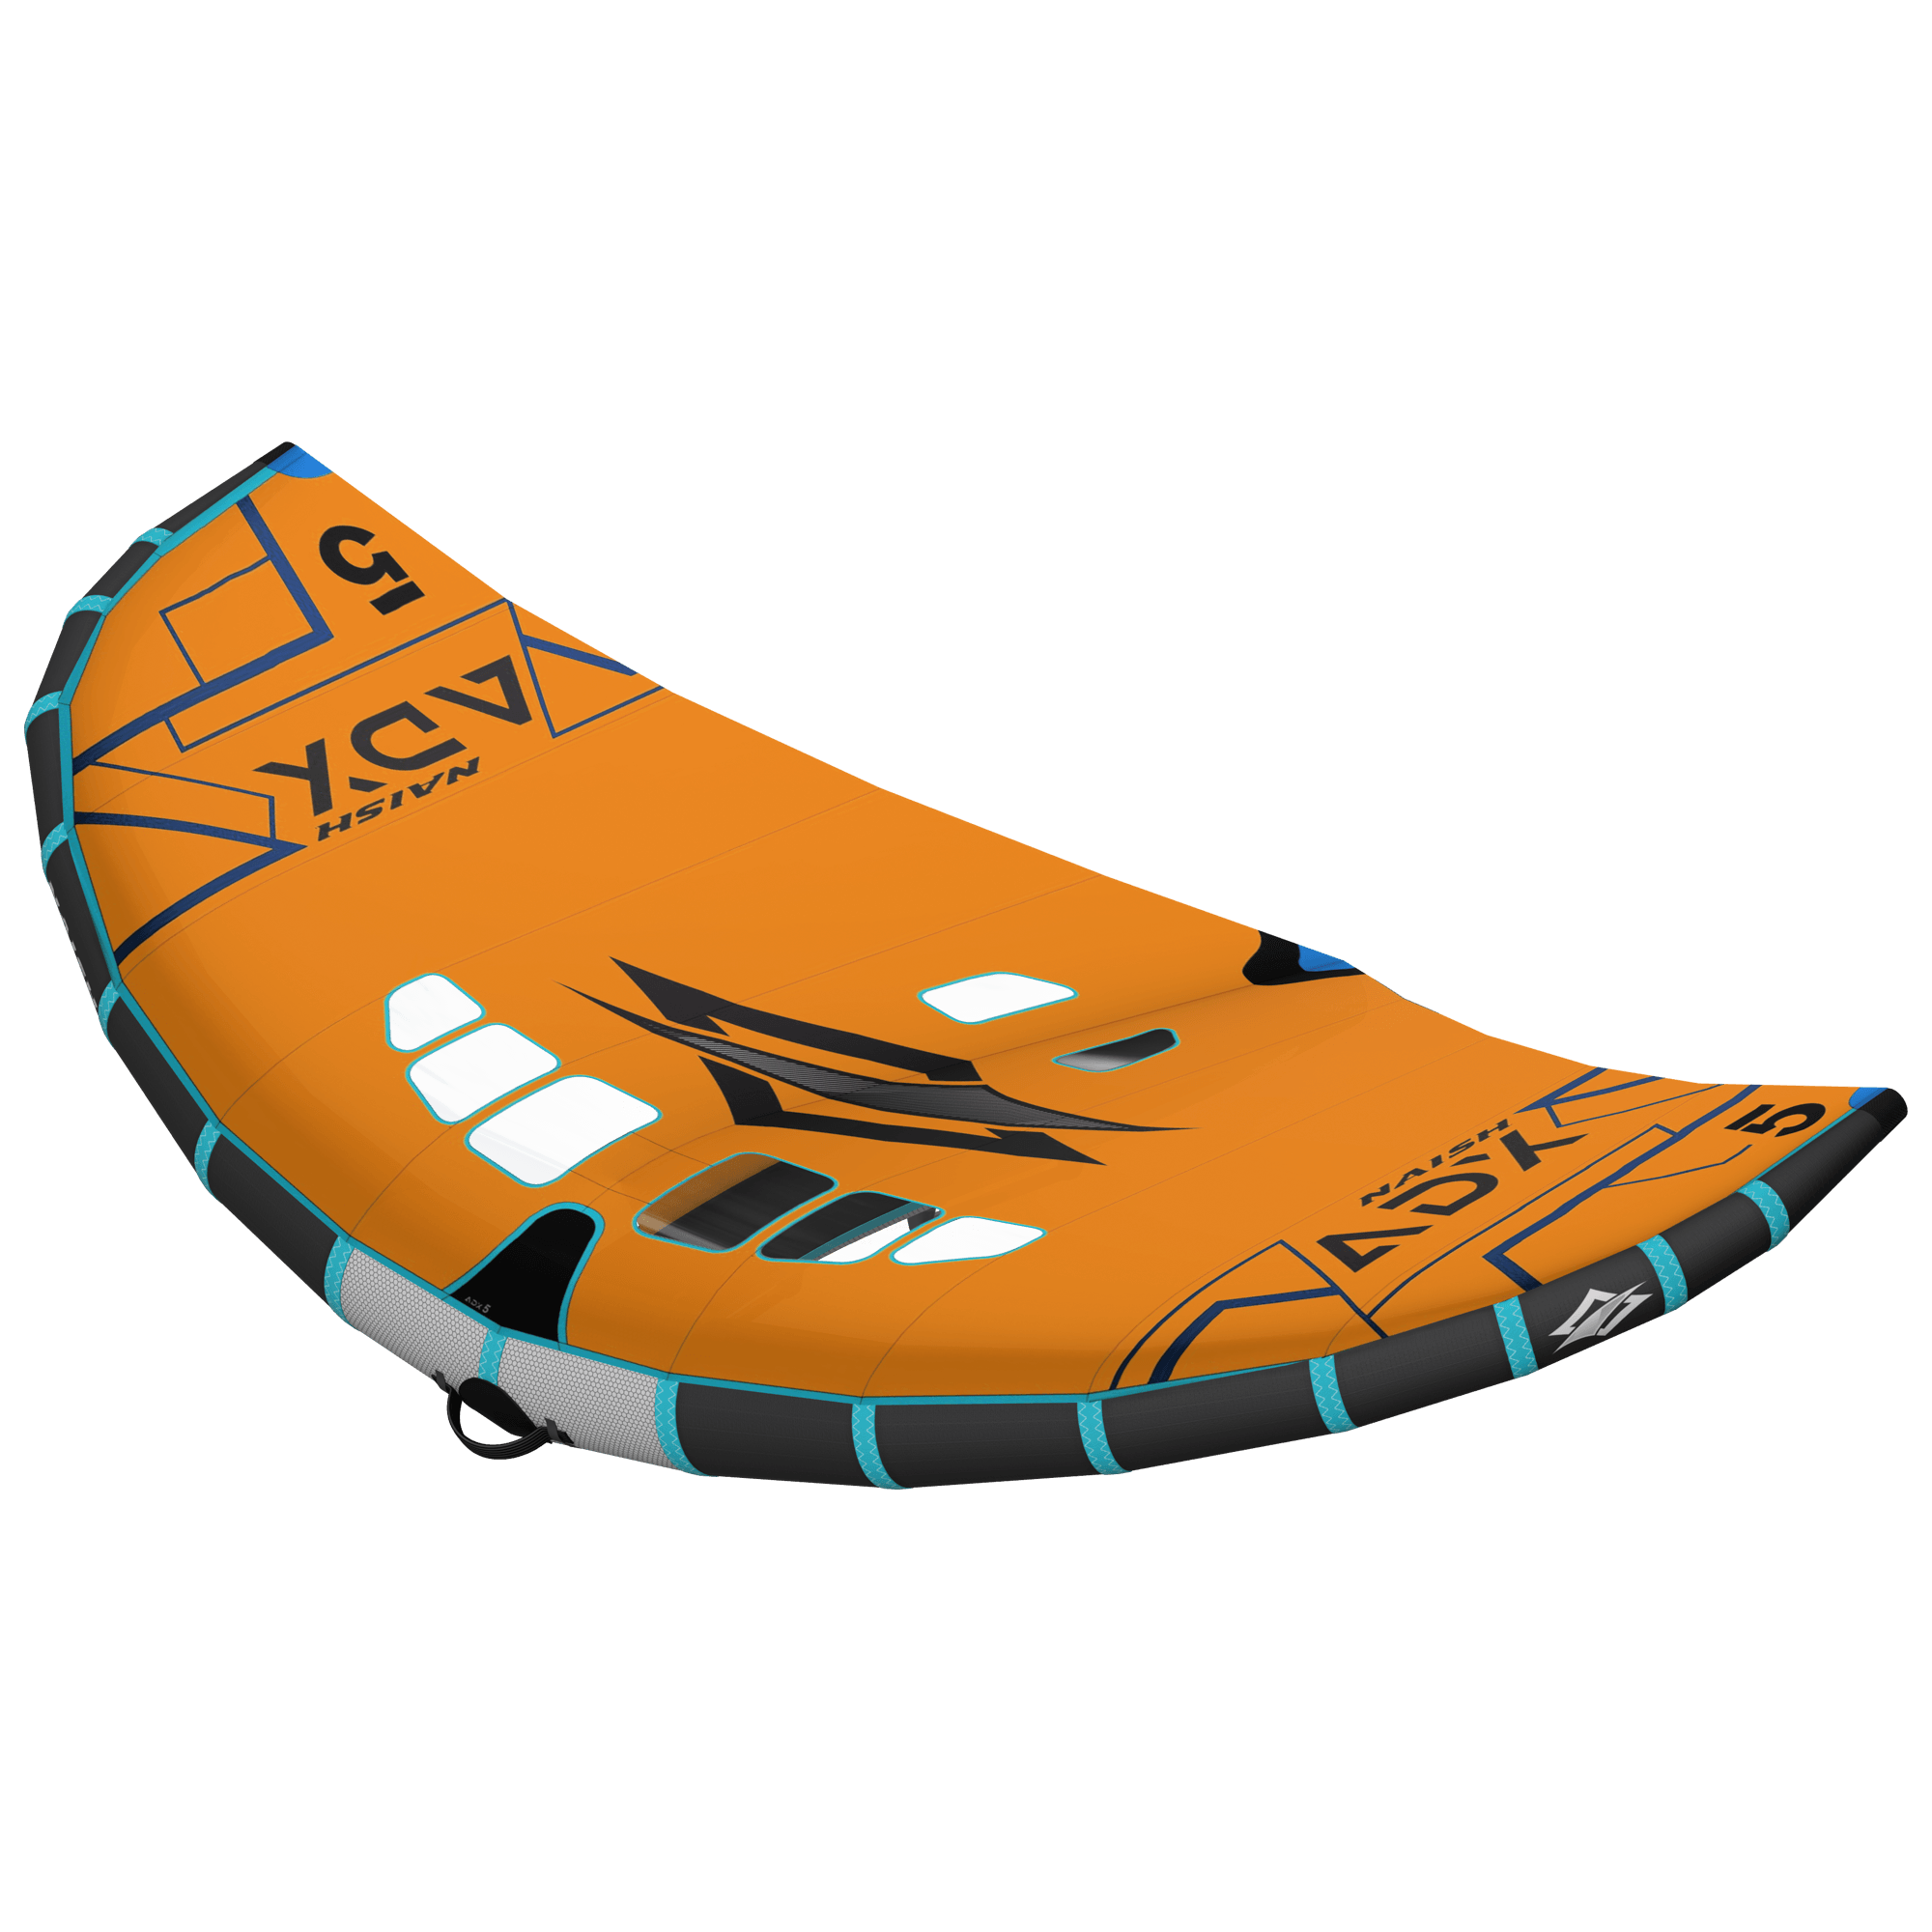 Wing-Surfer ADX - Naish.com